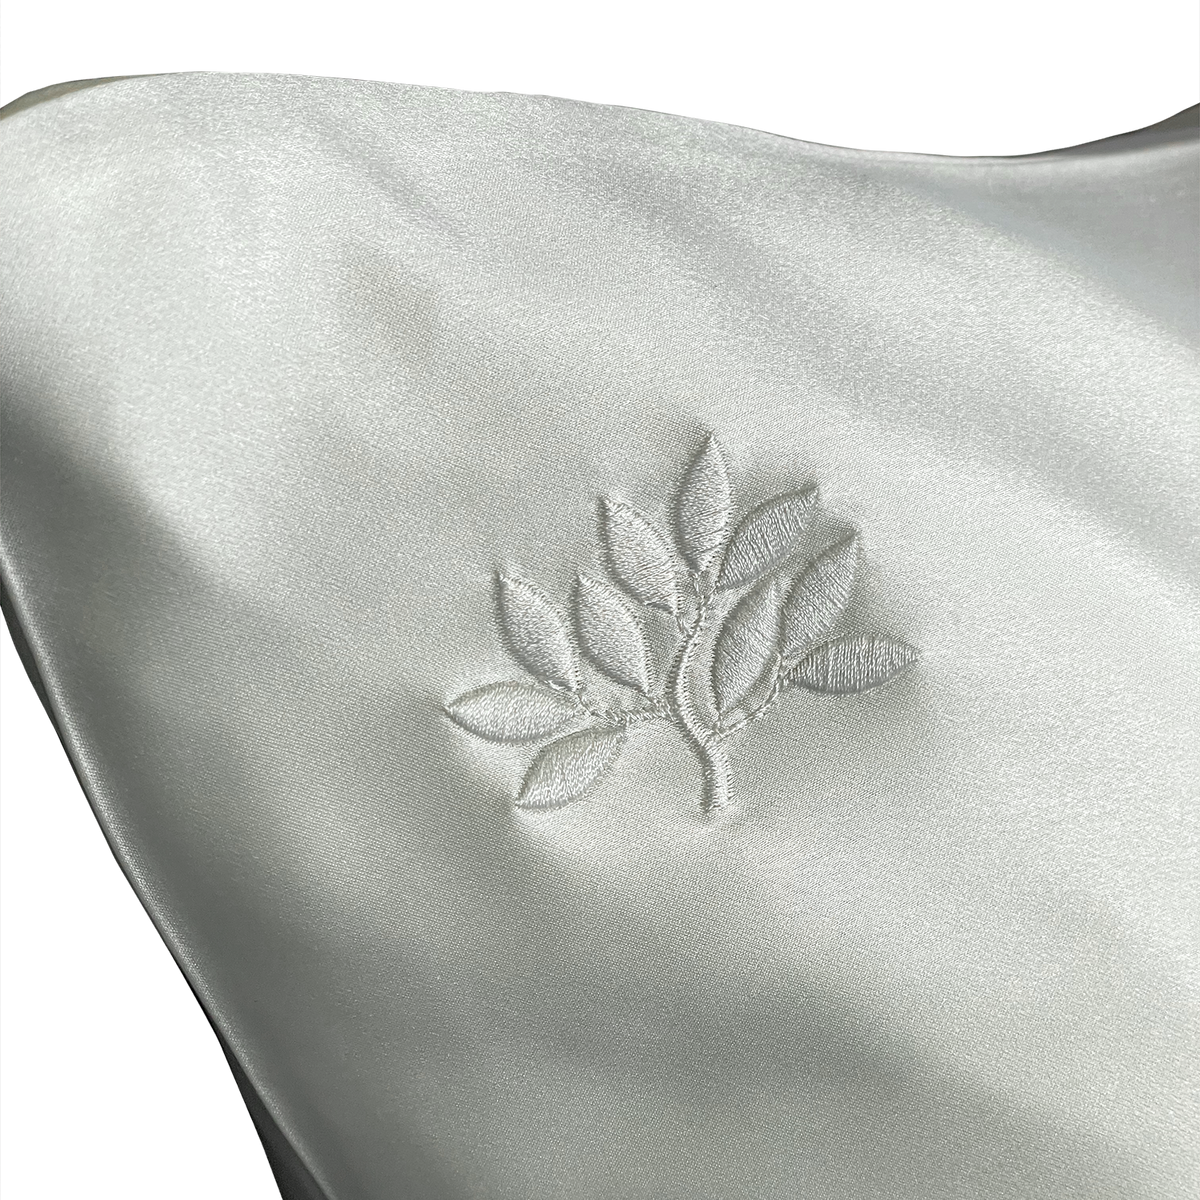 22 Momme Silk Pillowcase - White